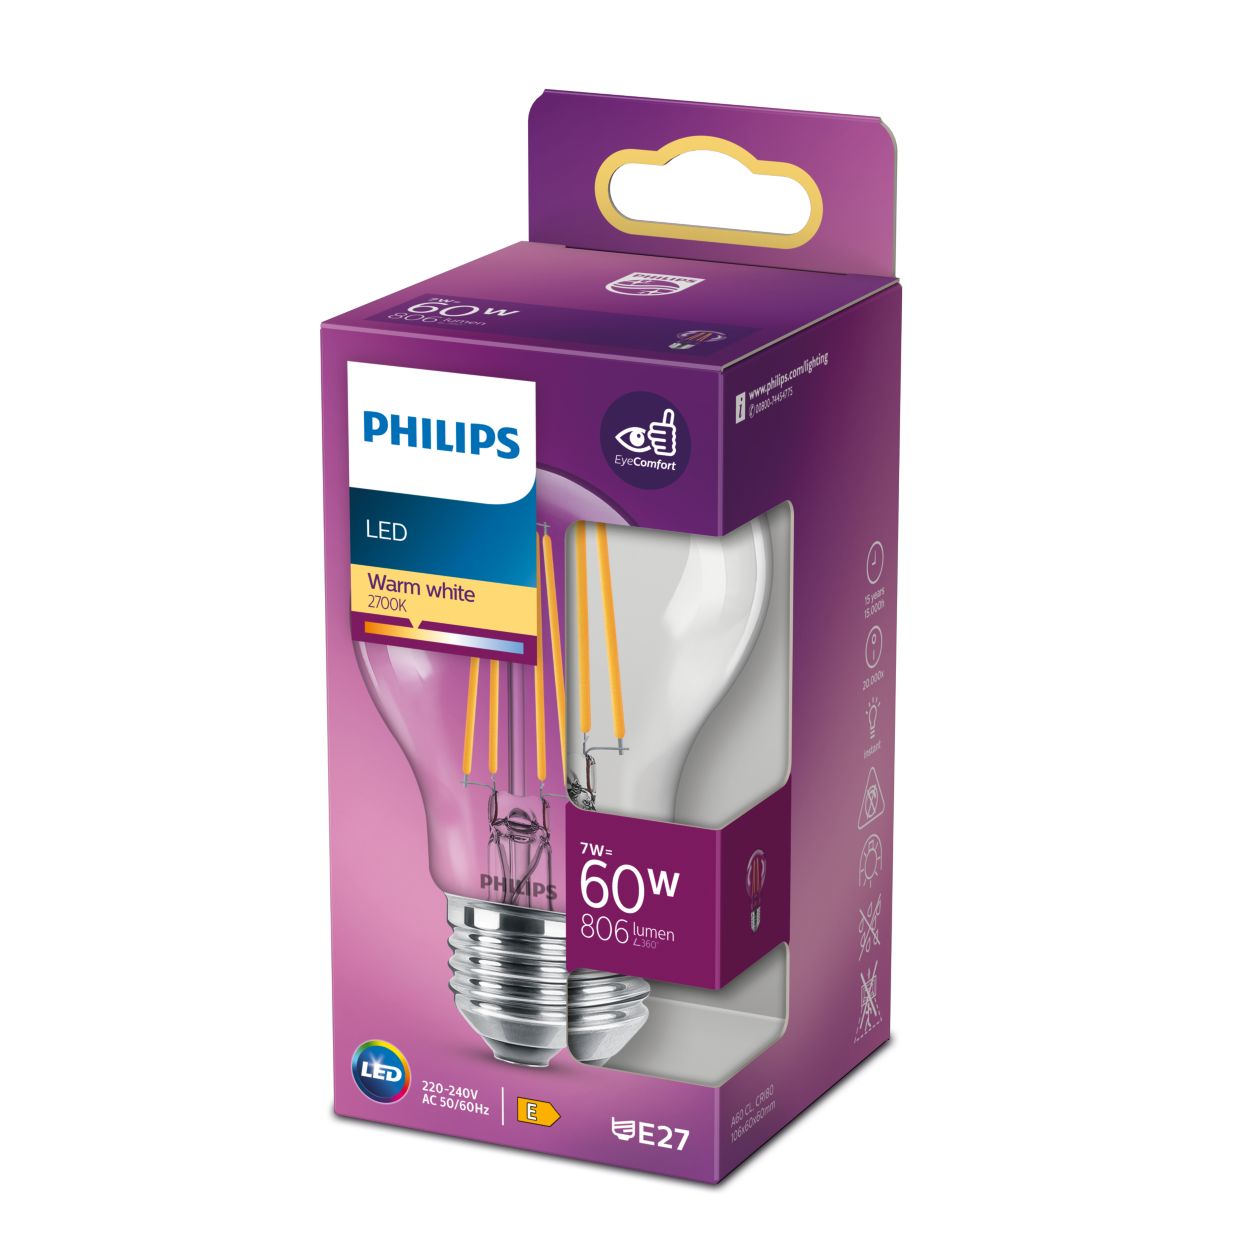 Philips LED Bulb 8718699675875